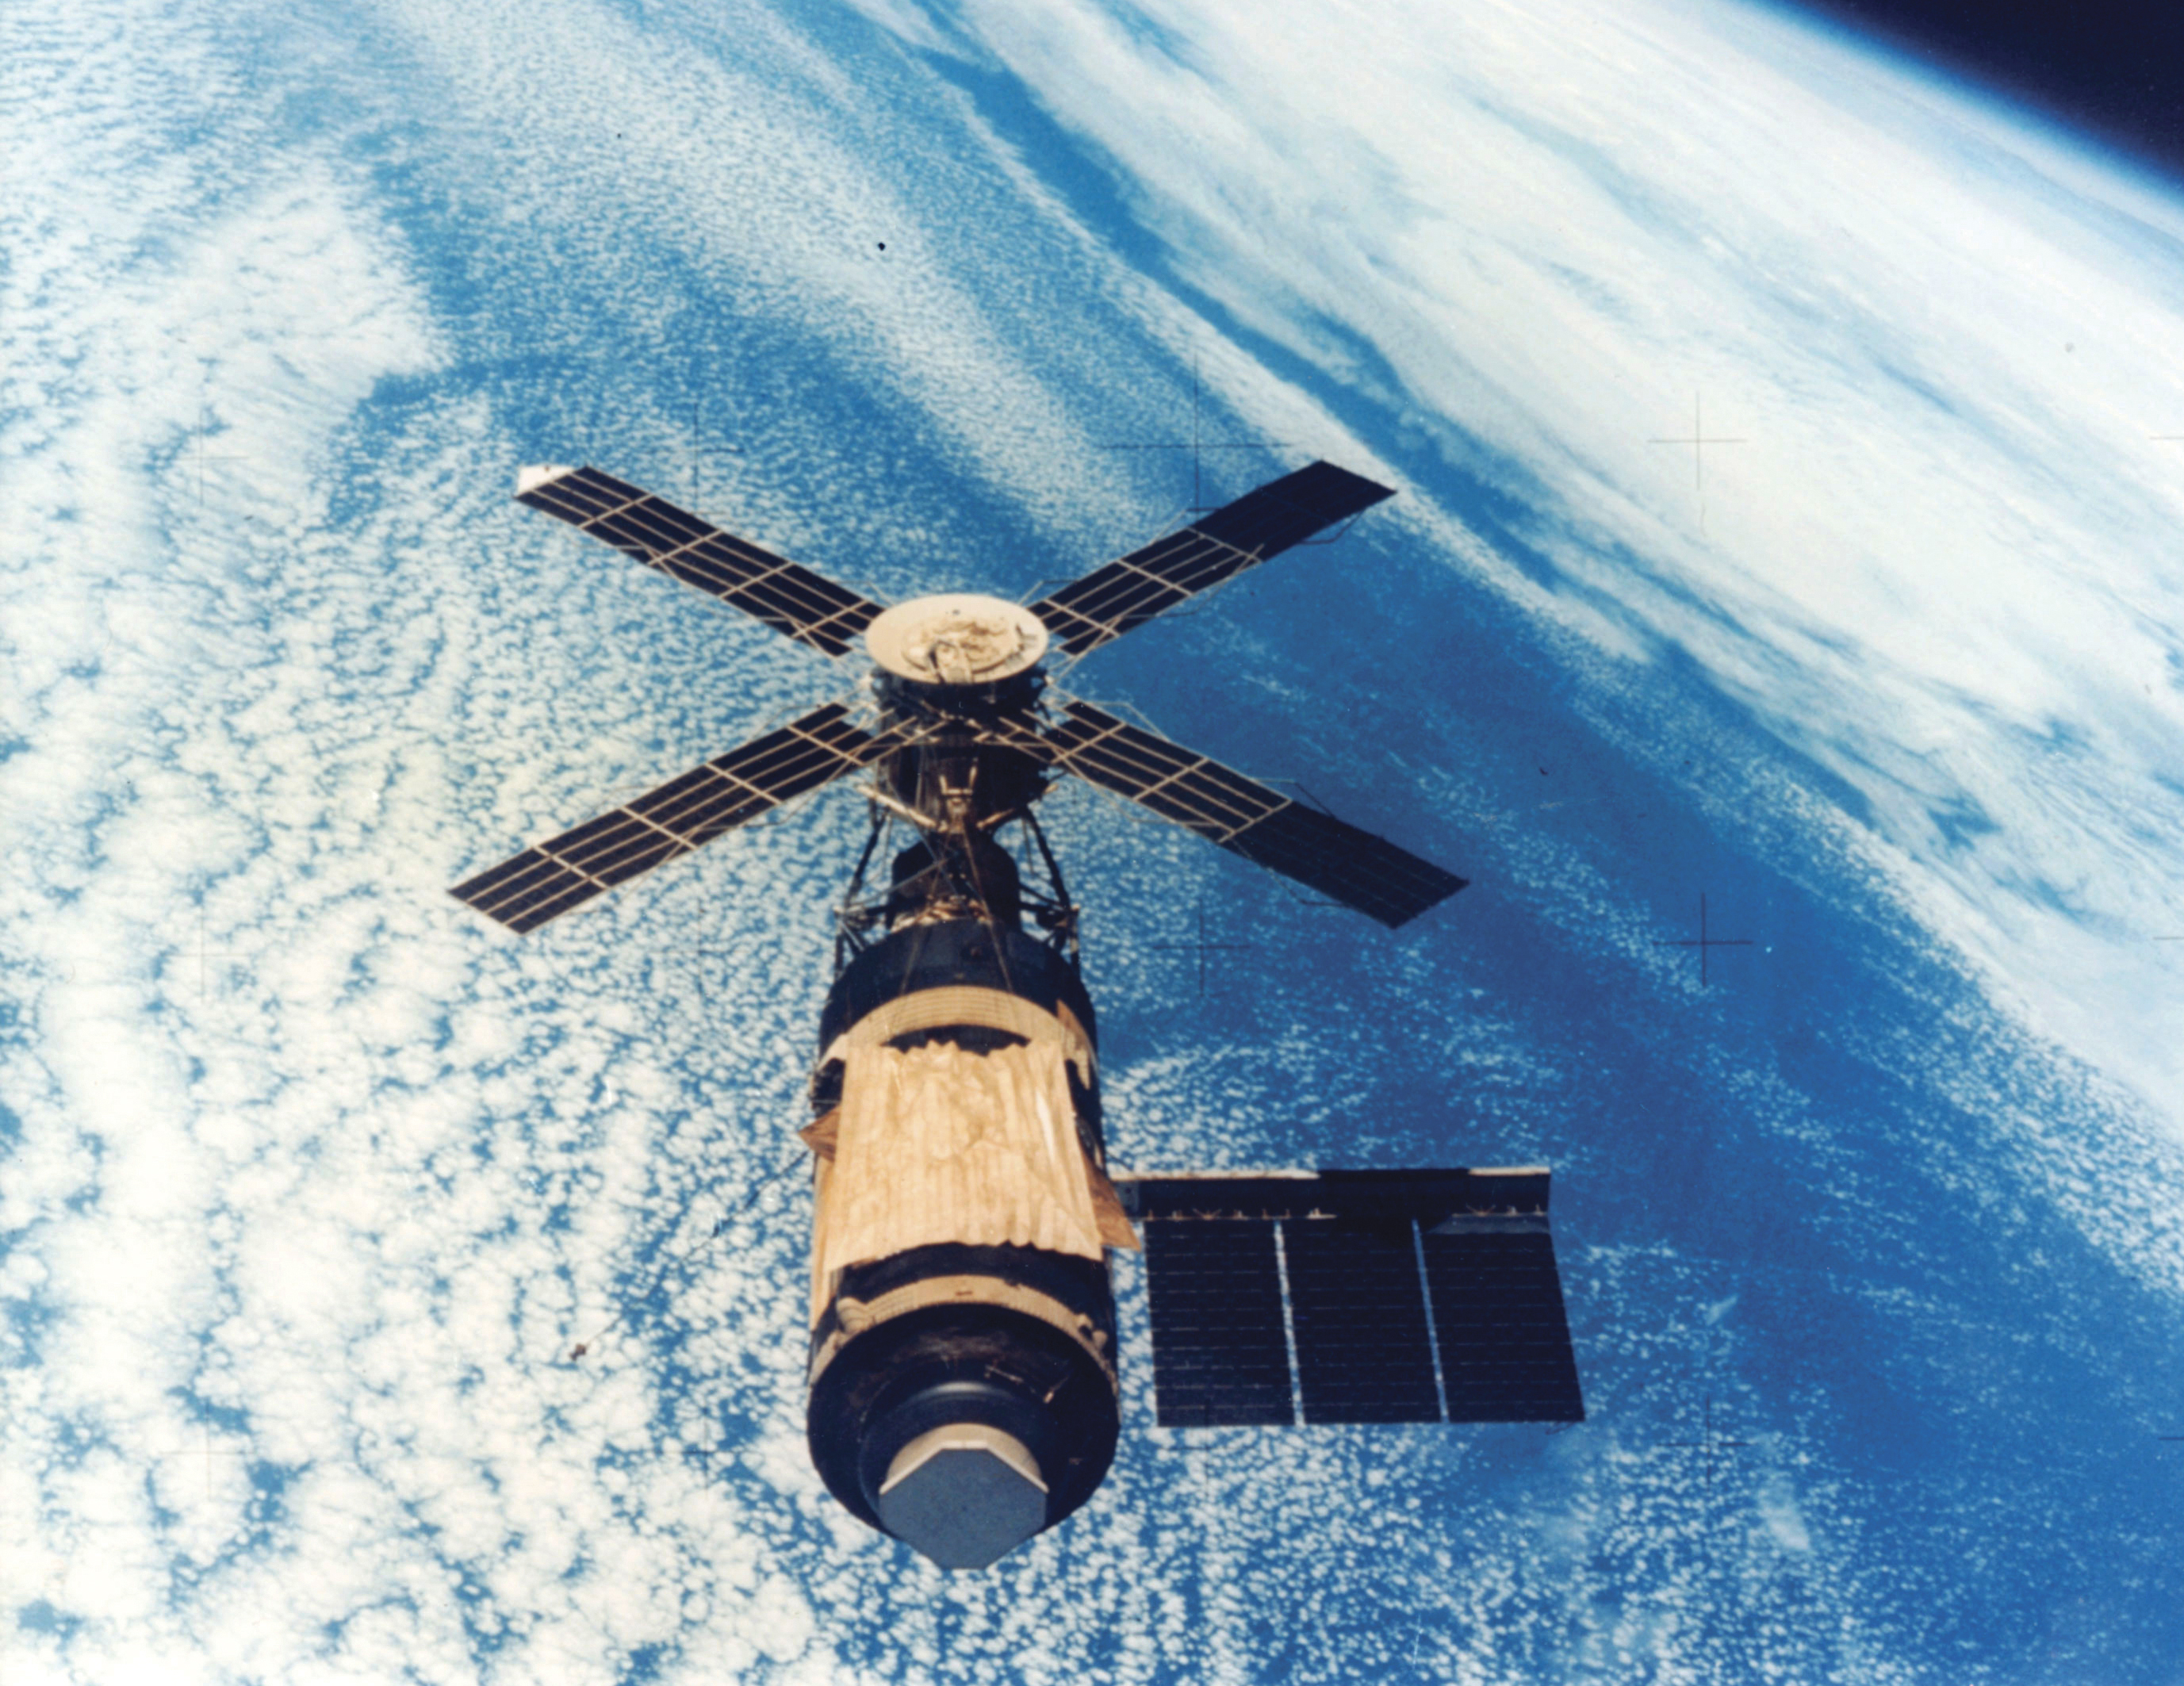 Die US-amerikanische Raumstation Skylab ist nach ihrem Abwurf aus dem Weltraum das größte jemals in den Ozeanen gefundene Raumschiff